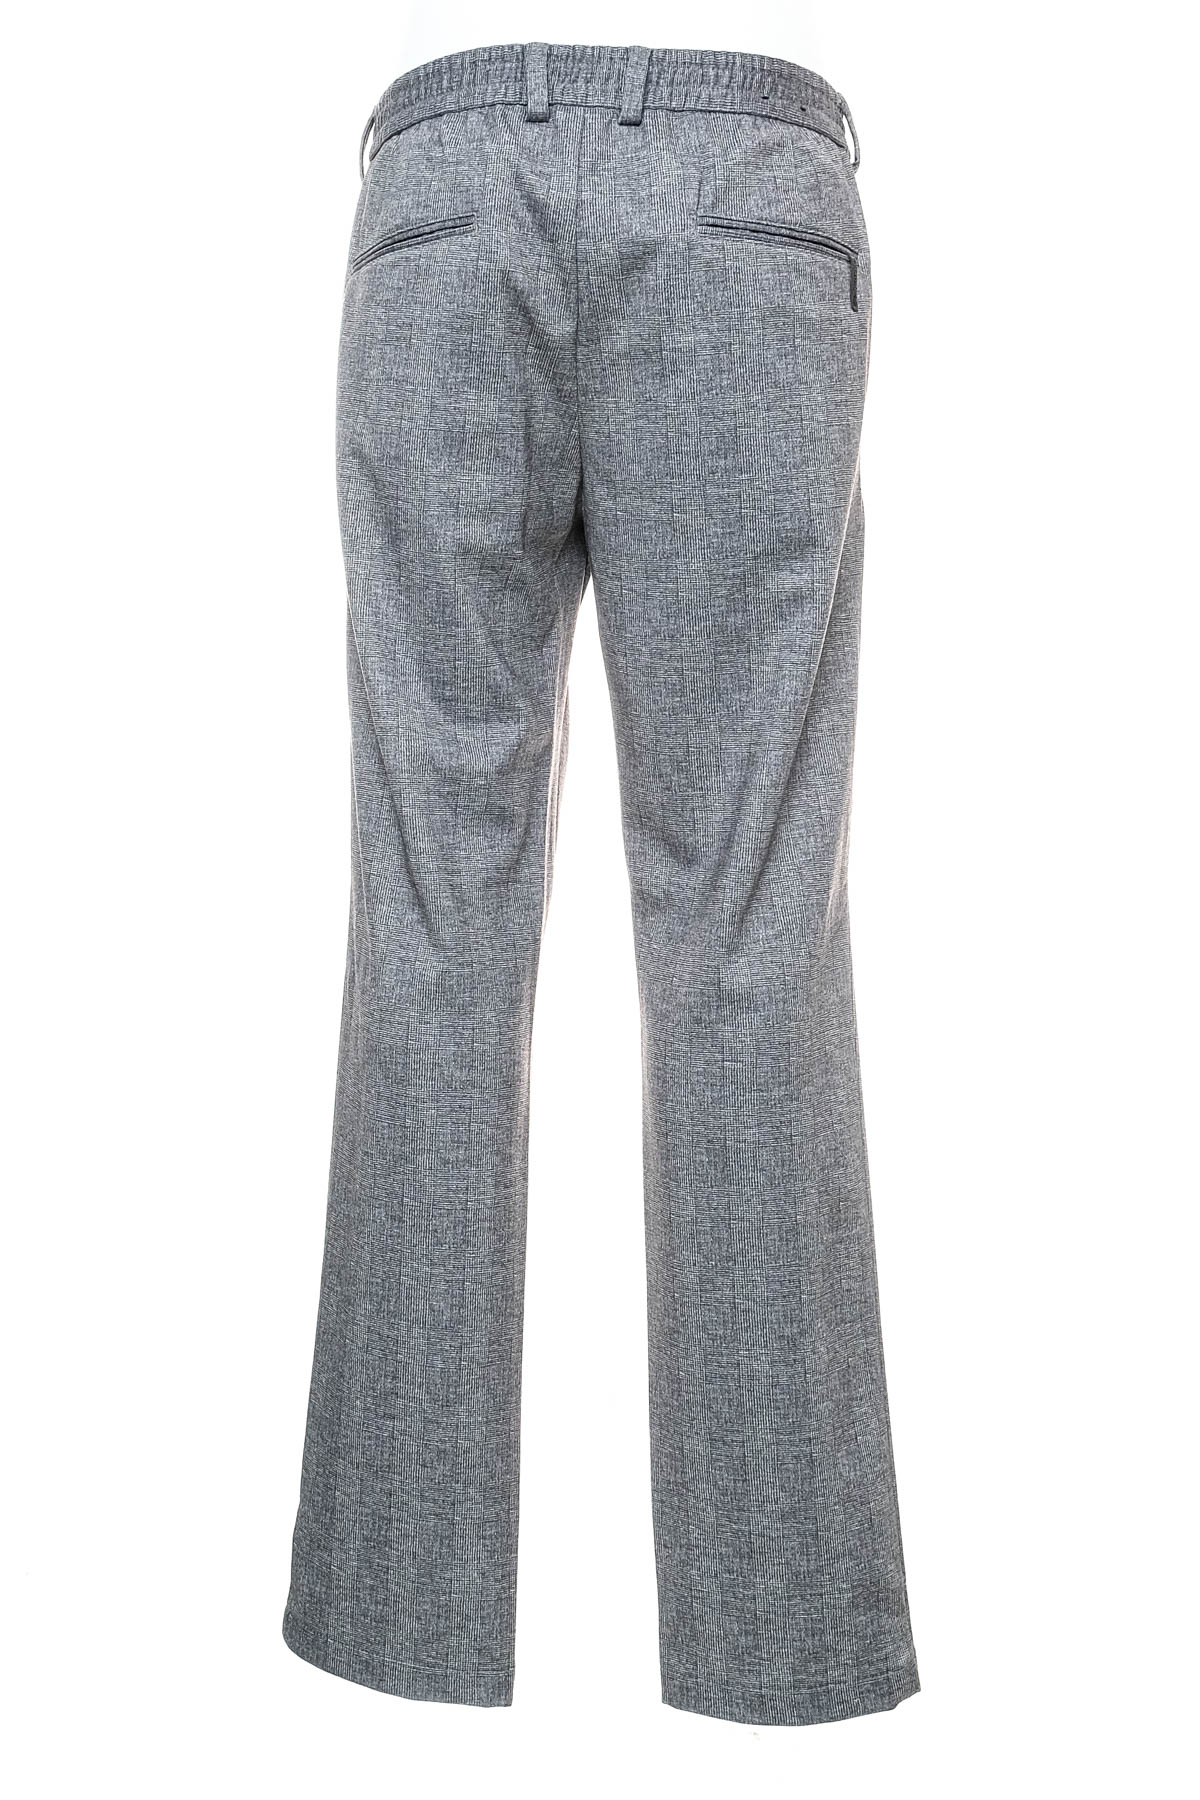 Pantalon pentru bărbați - DUNMORE - 1